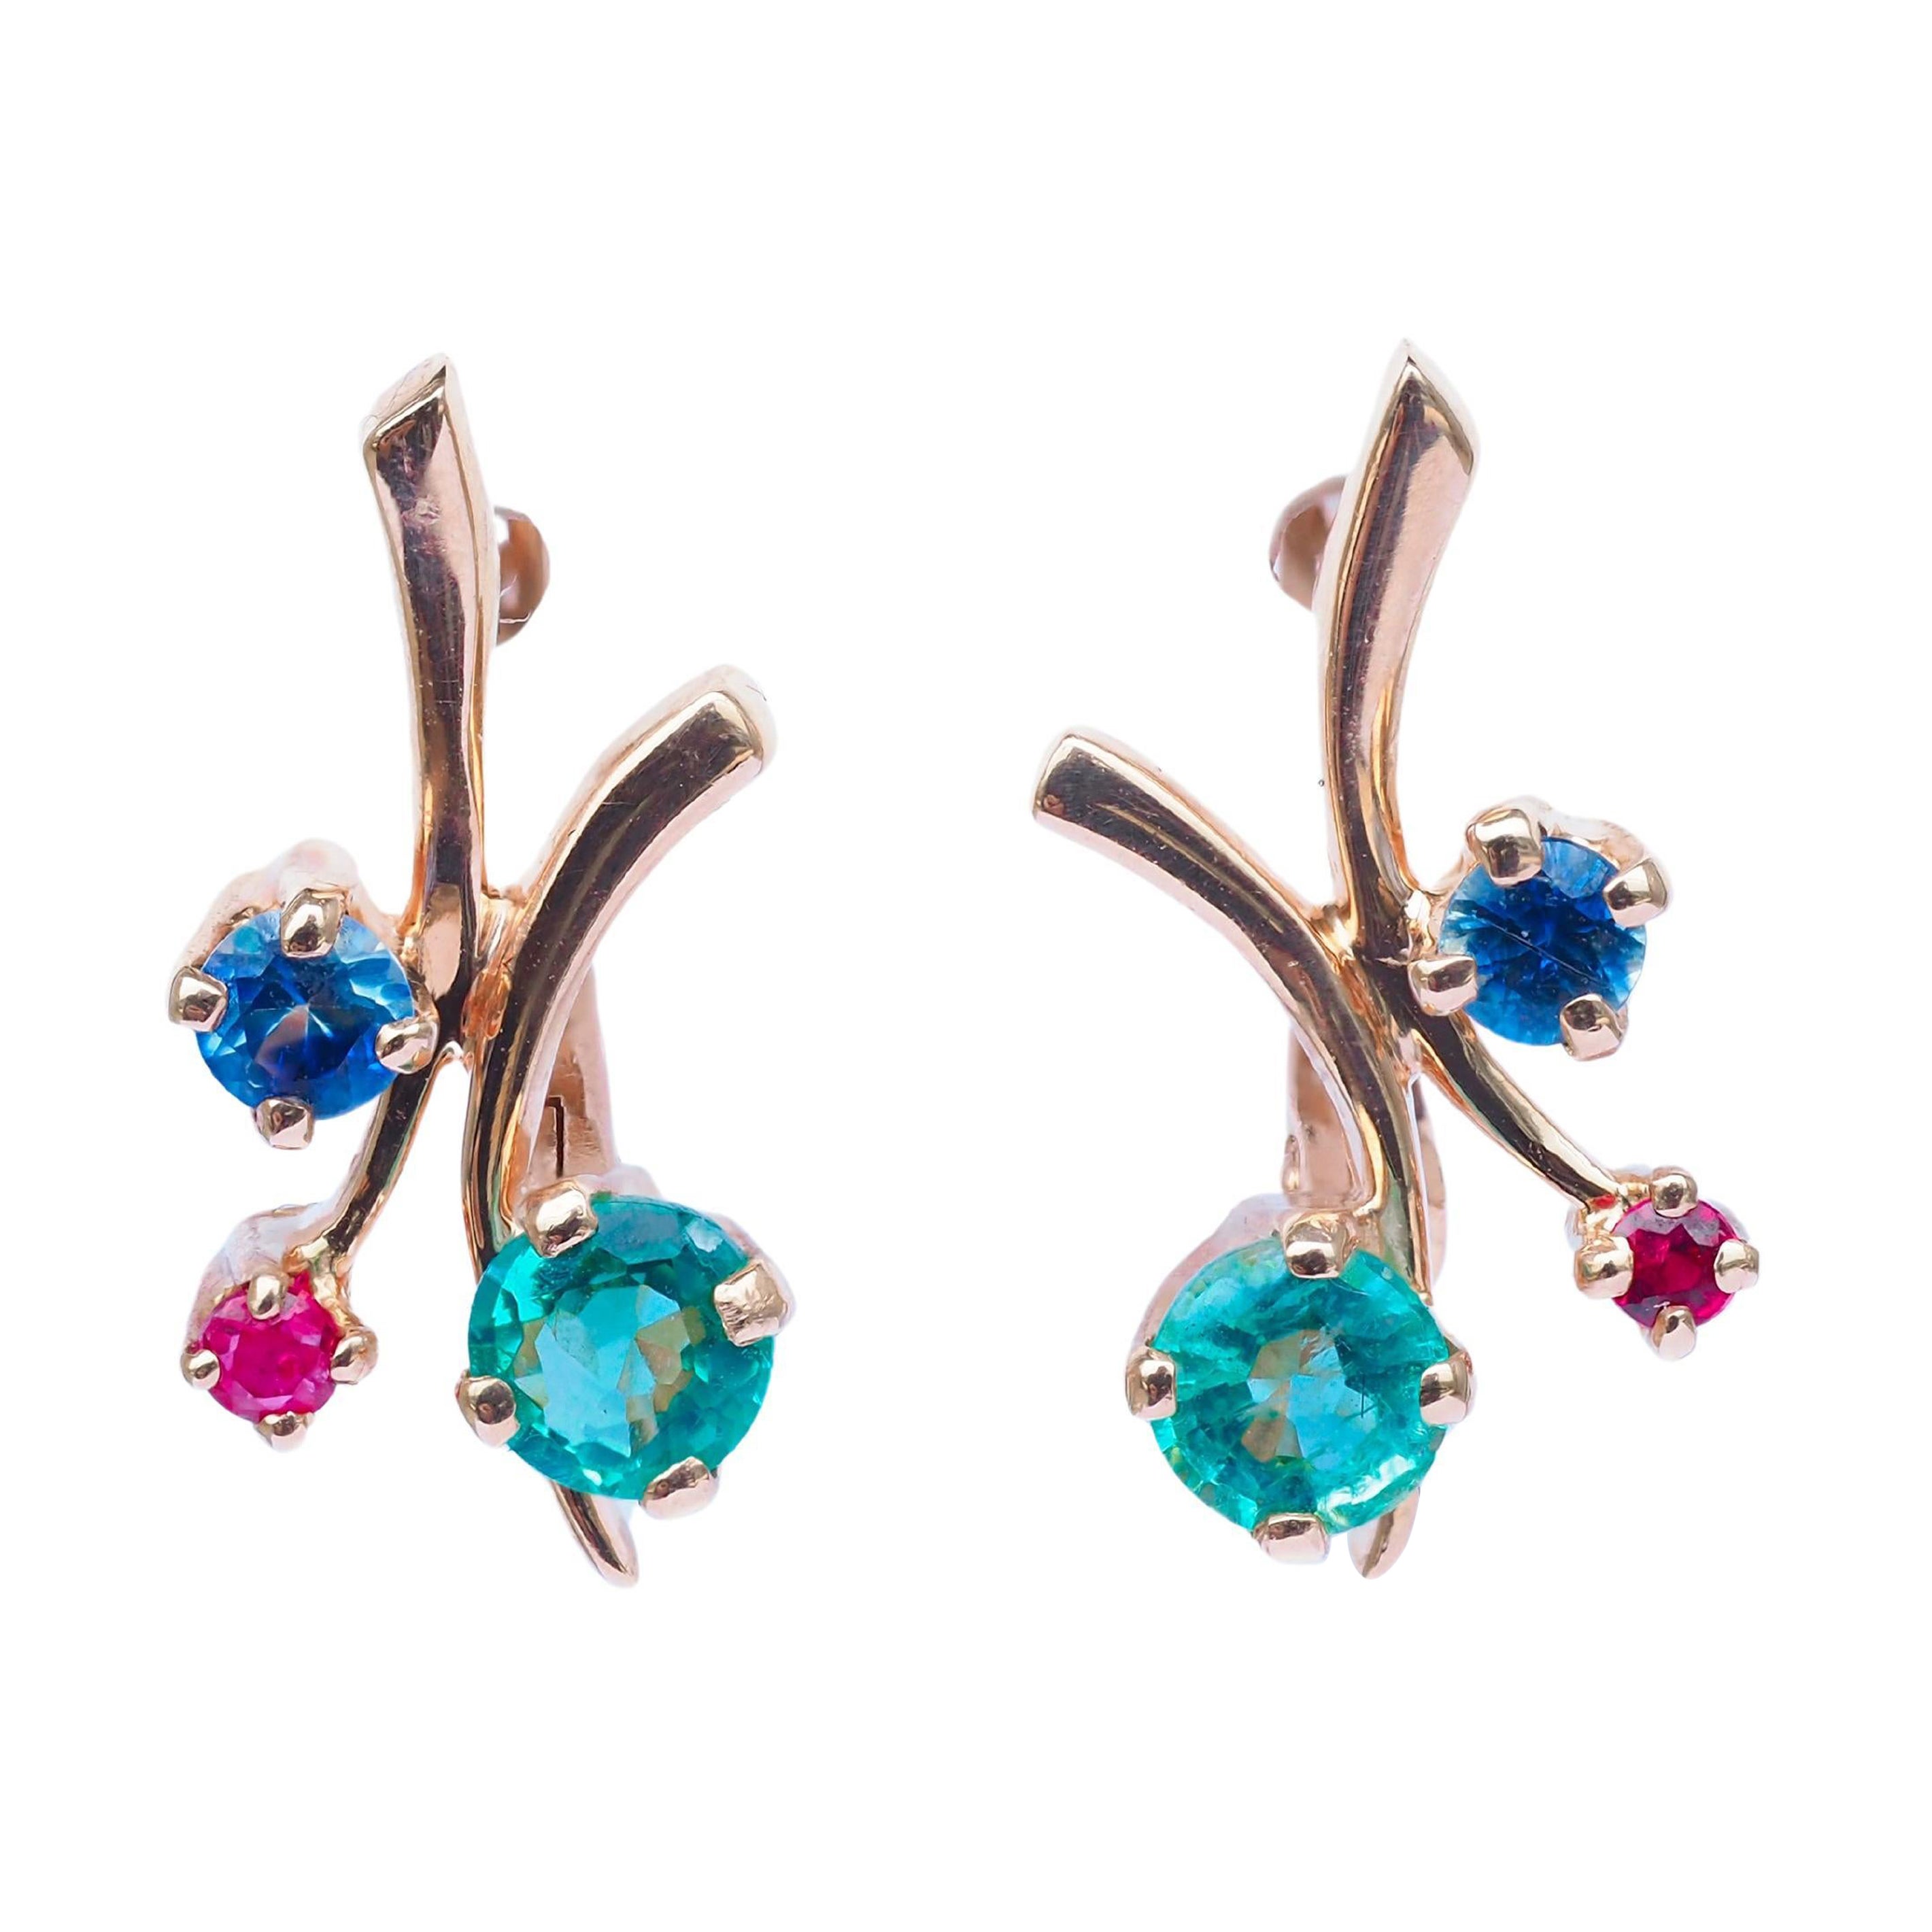 Emerald, sapphire, ruby earrings in 14k gold. Tiny gold earrings. 